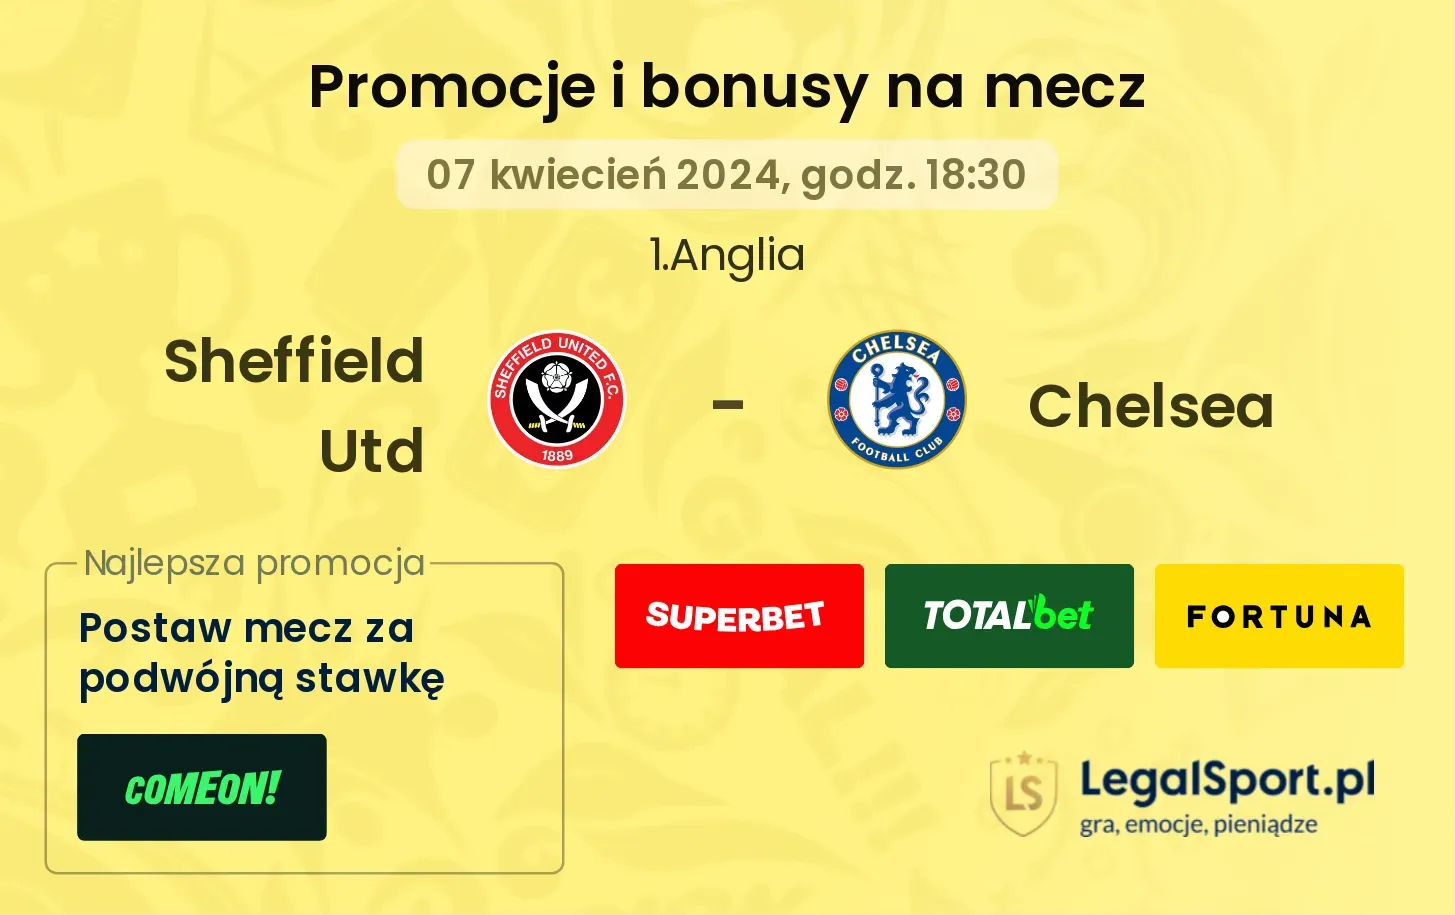 Sheffield Utd - Chelsea promocje bonusy na mecz